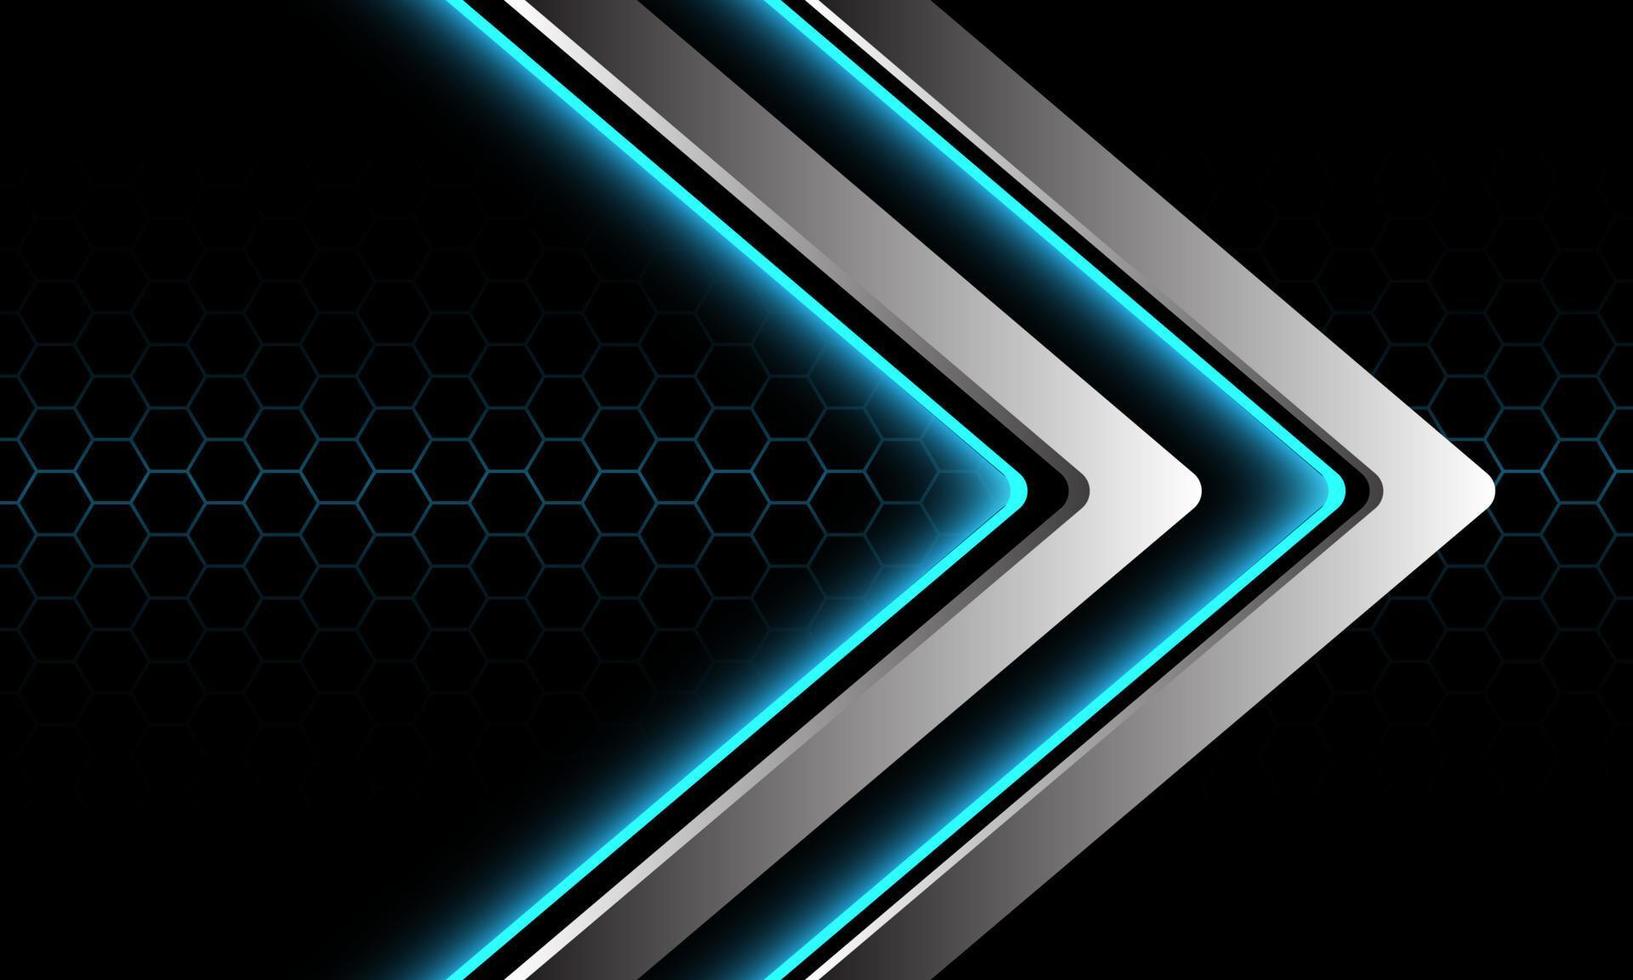 Dirección de flecha de neón de luz azul plateada abstracta geométrica en diseño de malla hexagonal oscuro fondo de tecnología futurista de lujo moderno vector